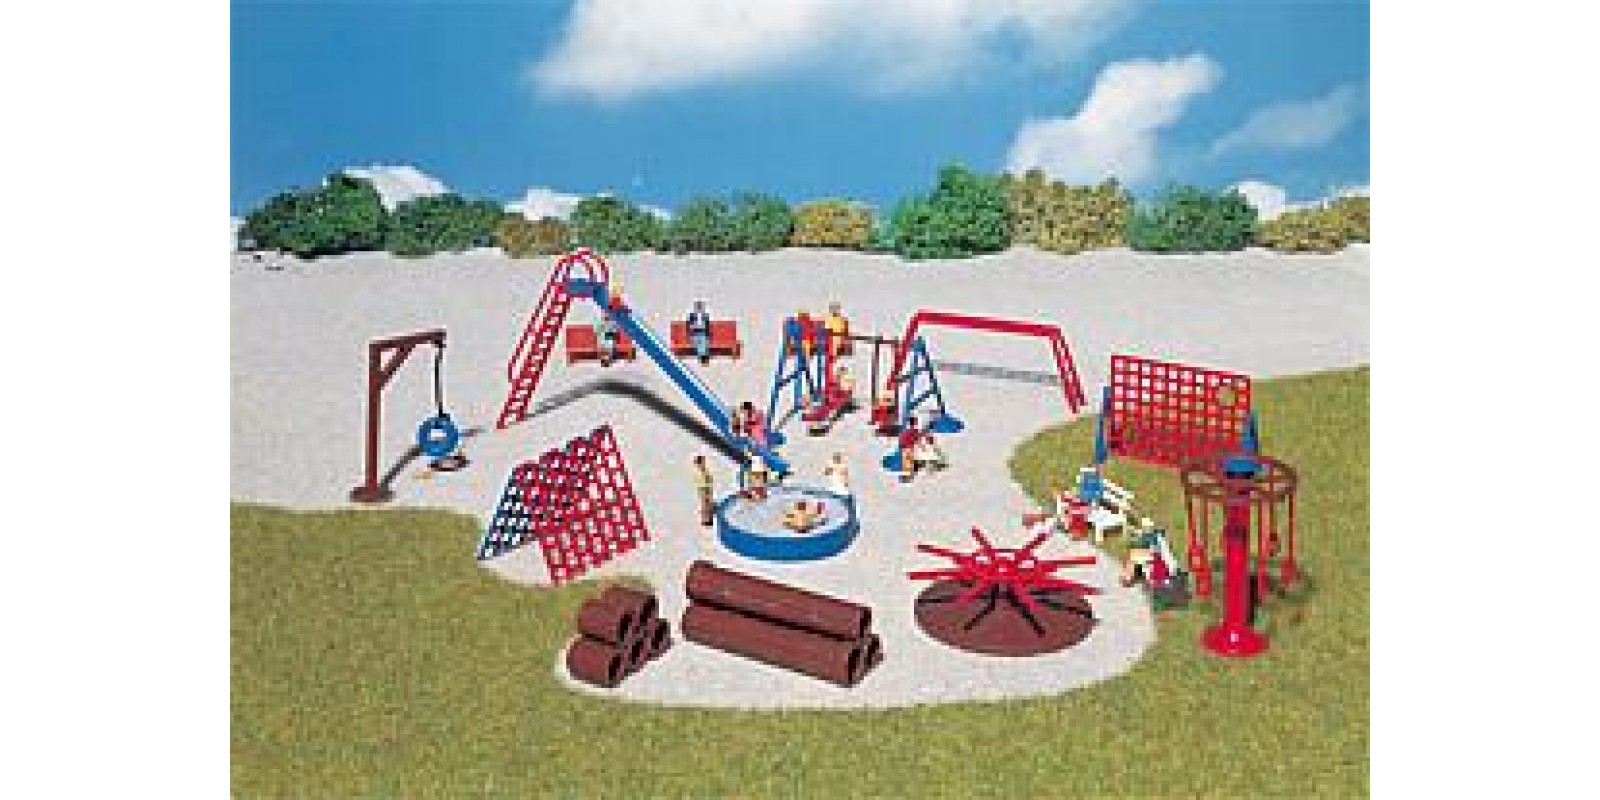 Fa180576 	 Playground equipment